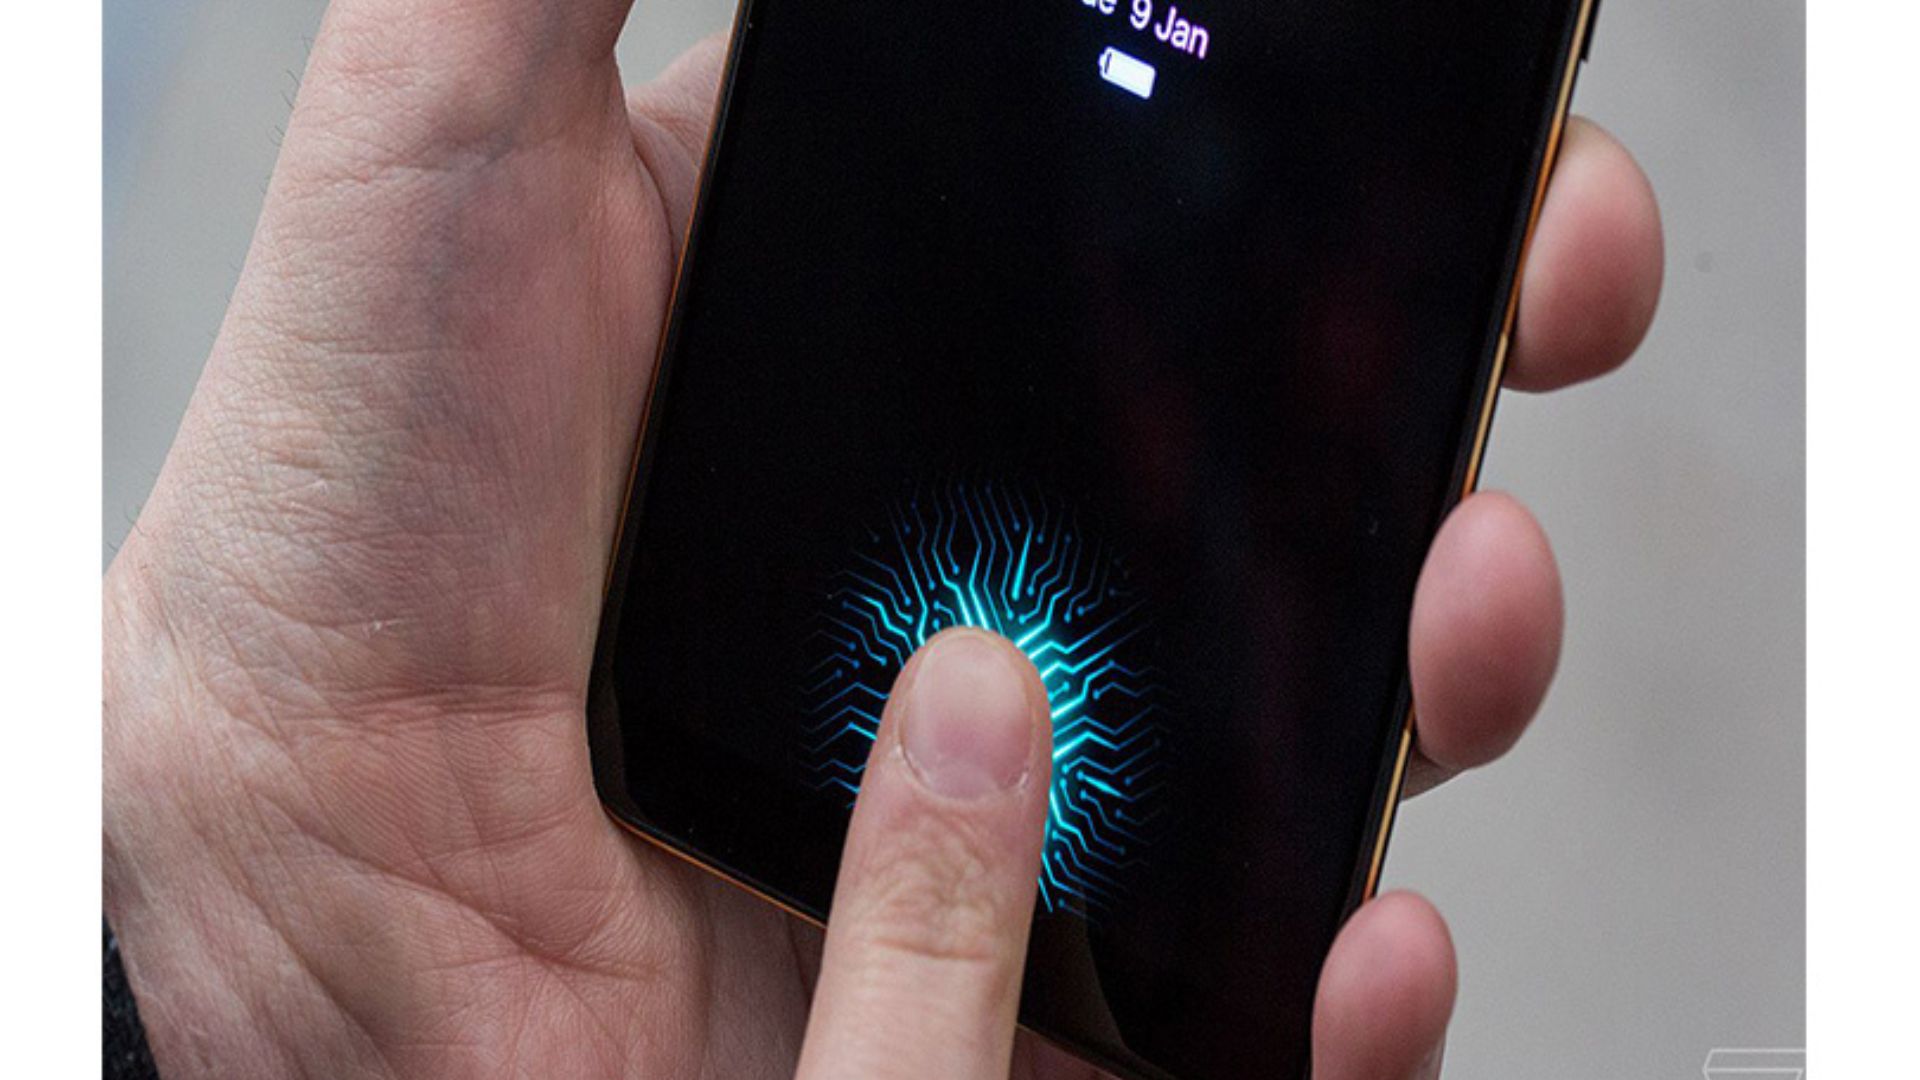 How Does The Fingerprint Sensor Work